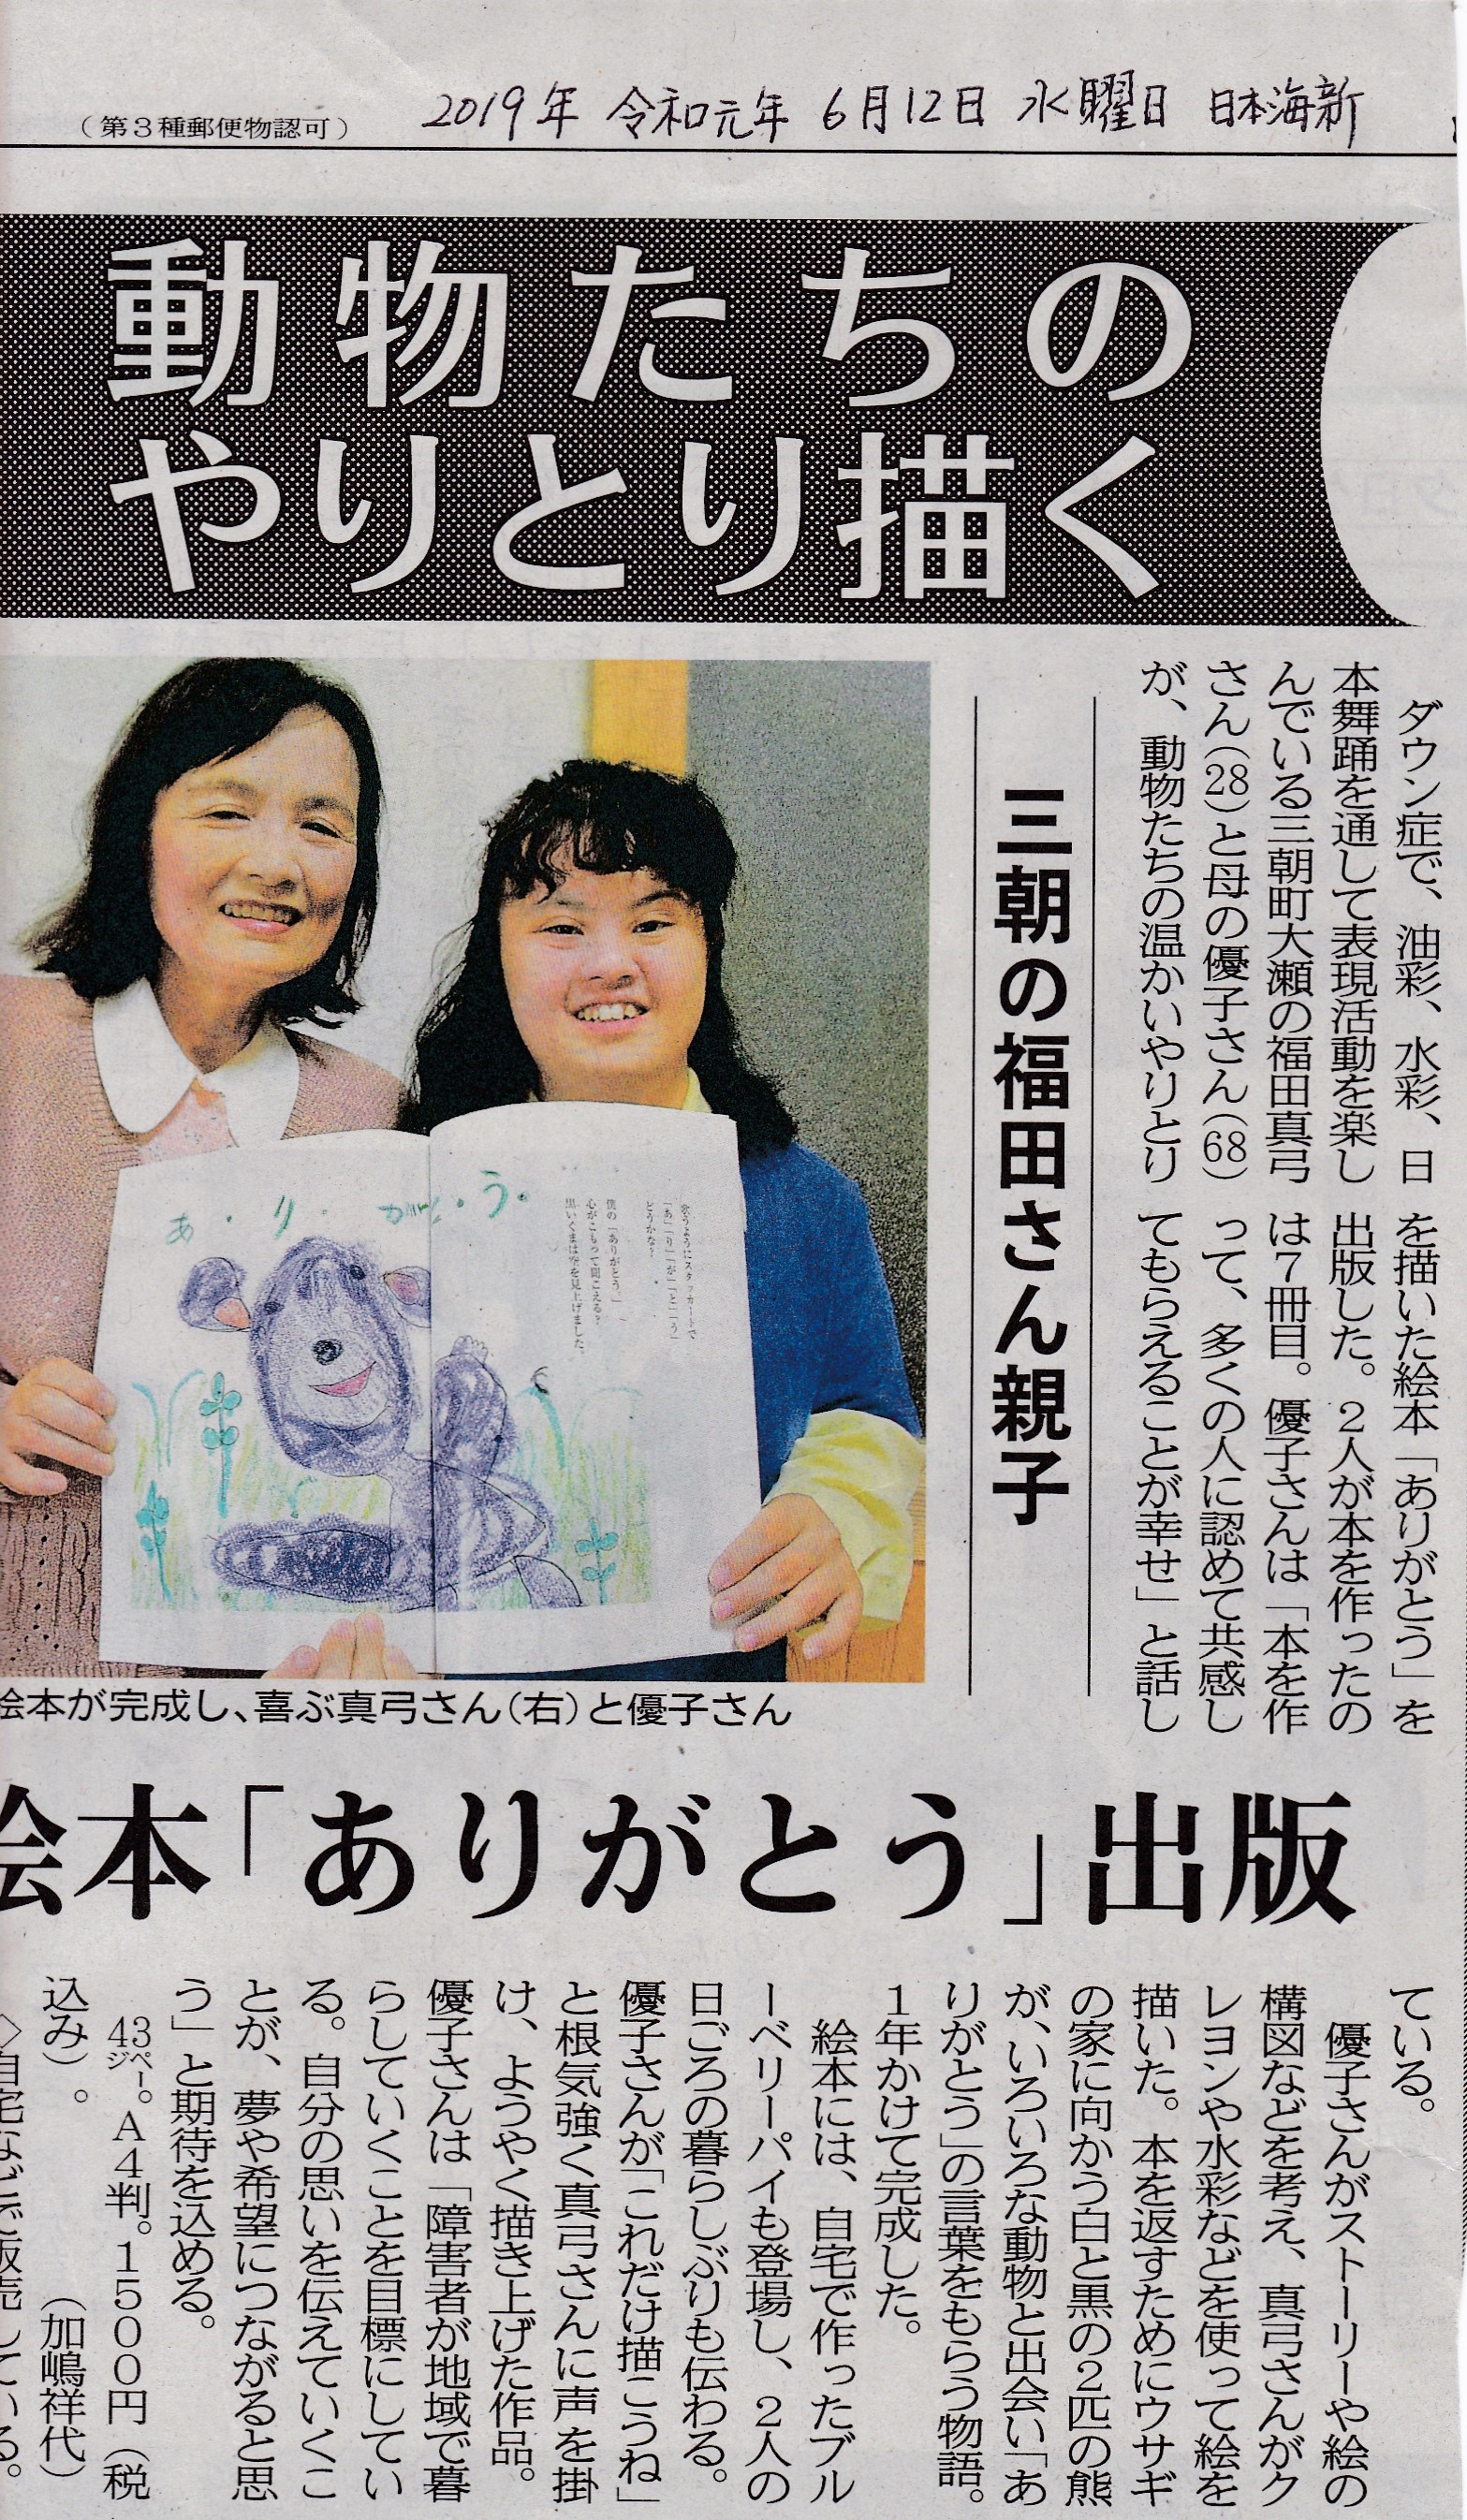 「ありがとう」の記事を日本海新聞に載せていただきました。